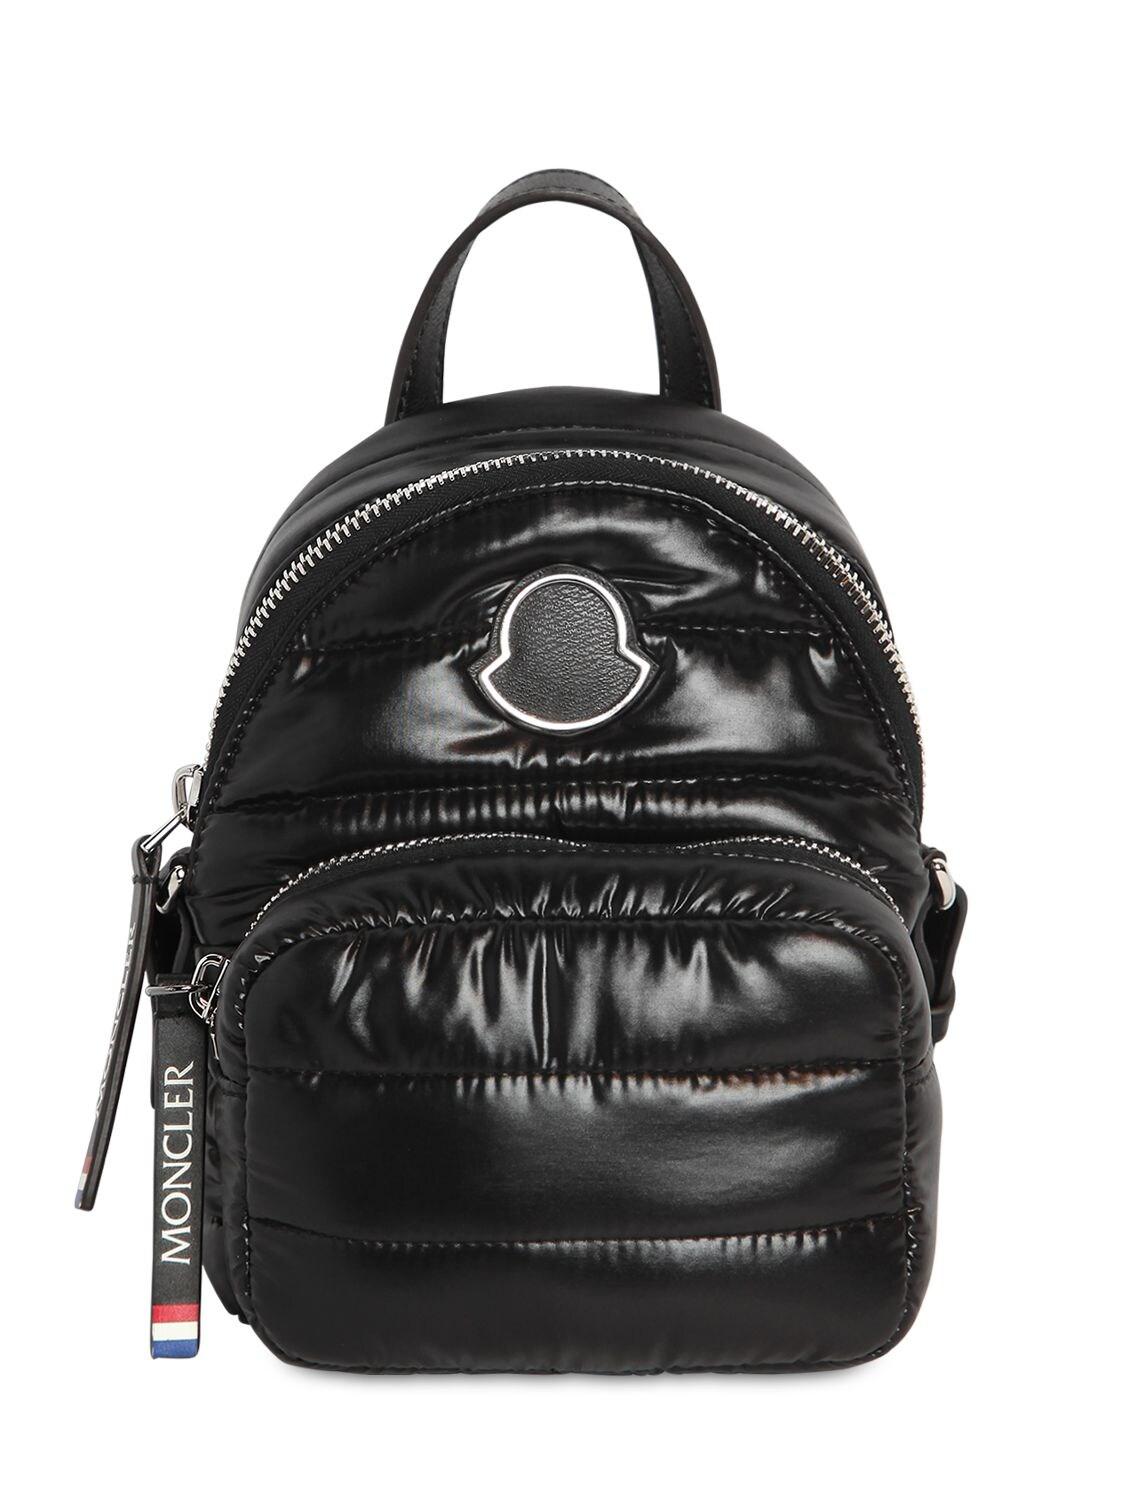 Moncler Small Kilia Pm Mini Bag in Black - Lyst